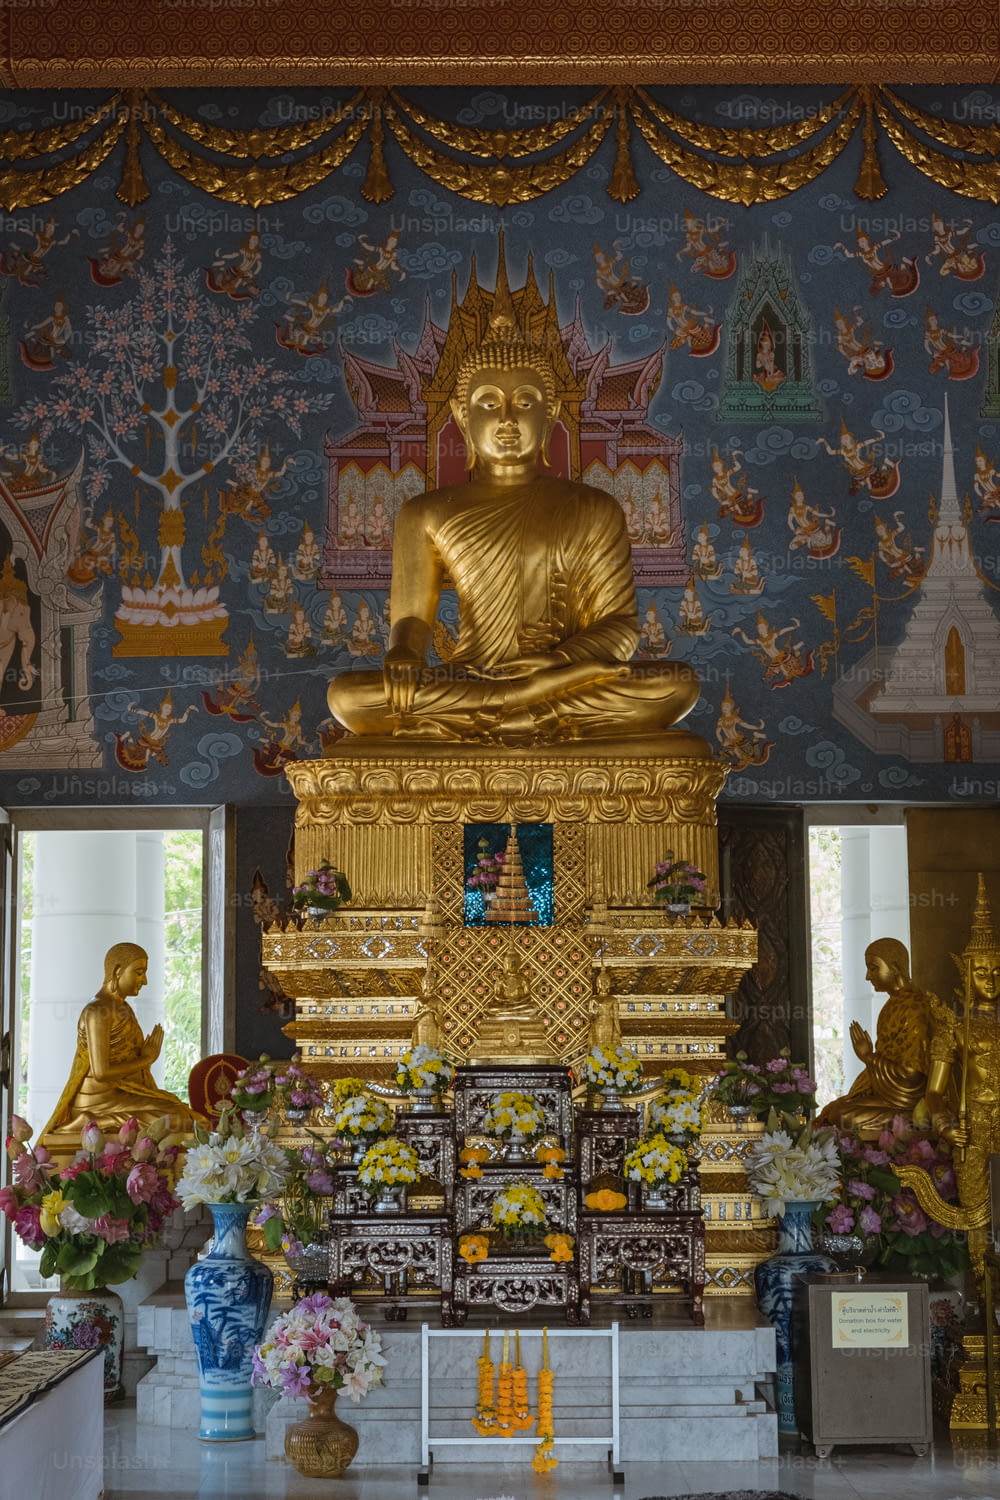 Una gran estatua dorada de Buda sentada en una habitación